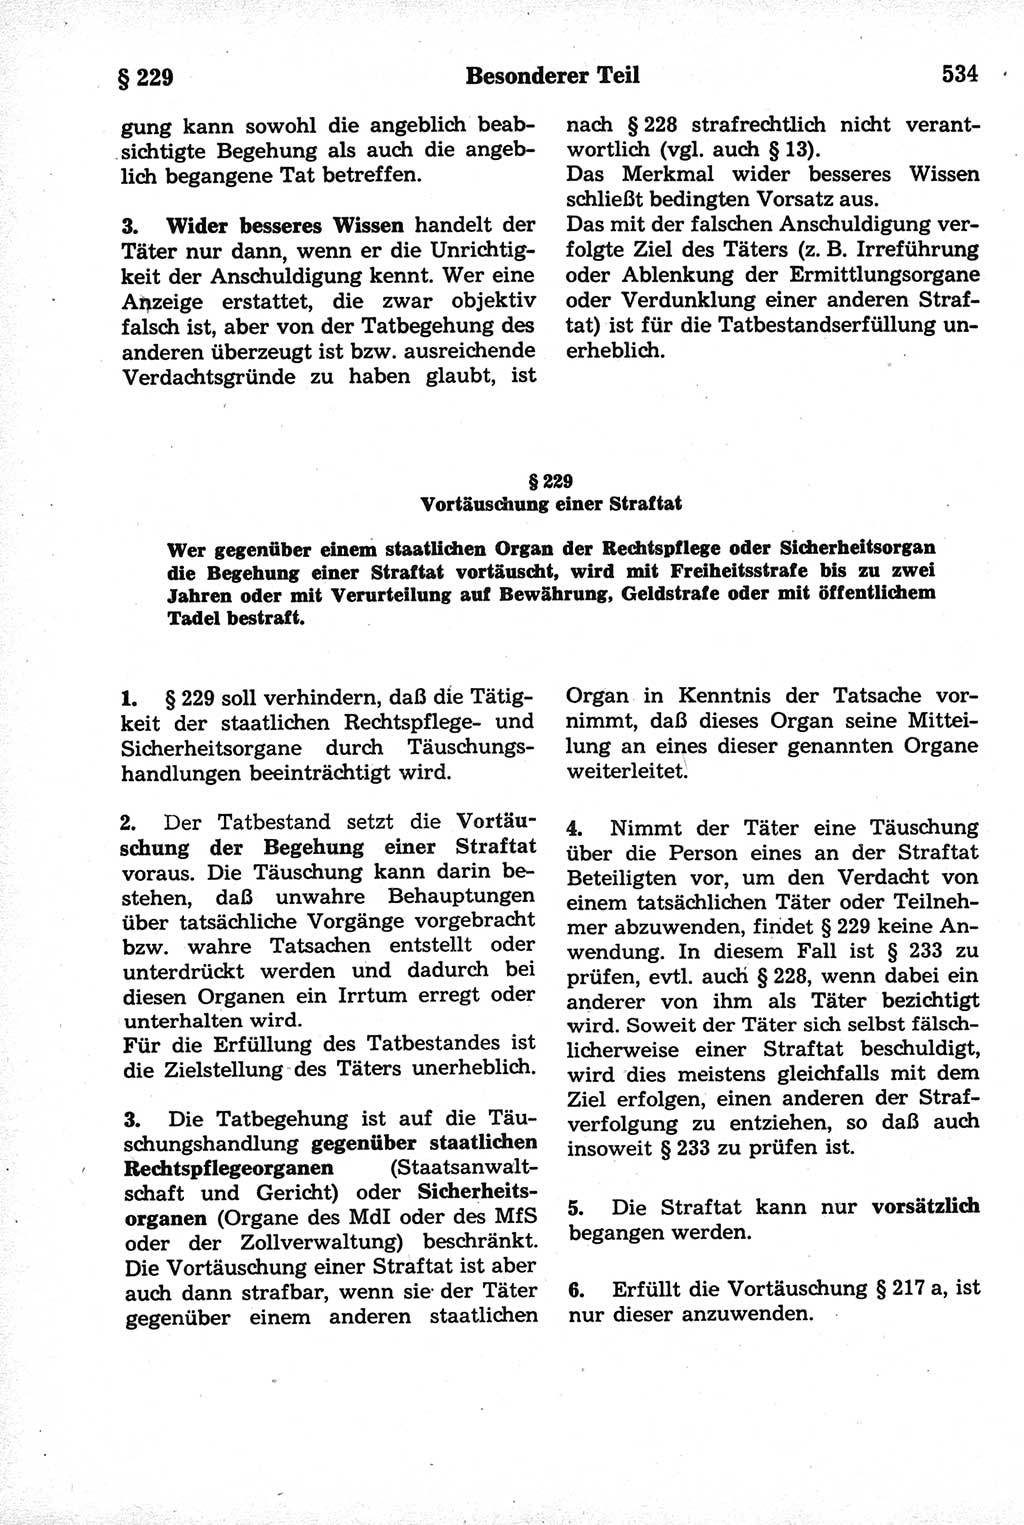 Strafrecht der Deutschen Demokratischen Republik (DDR), Kommentar zum Strafgesetzbuch (StGB) 1981, Seite 534 (Strafr. DDR Komm. StGB 1981, S. 534)